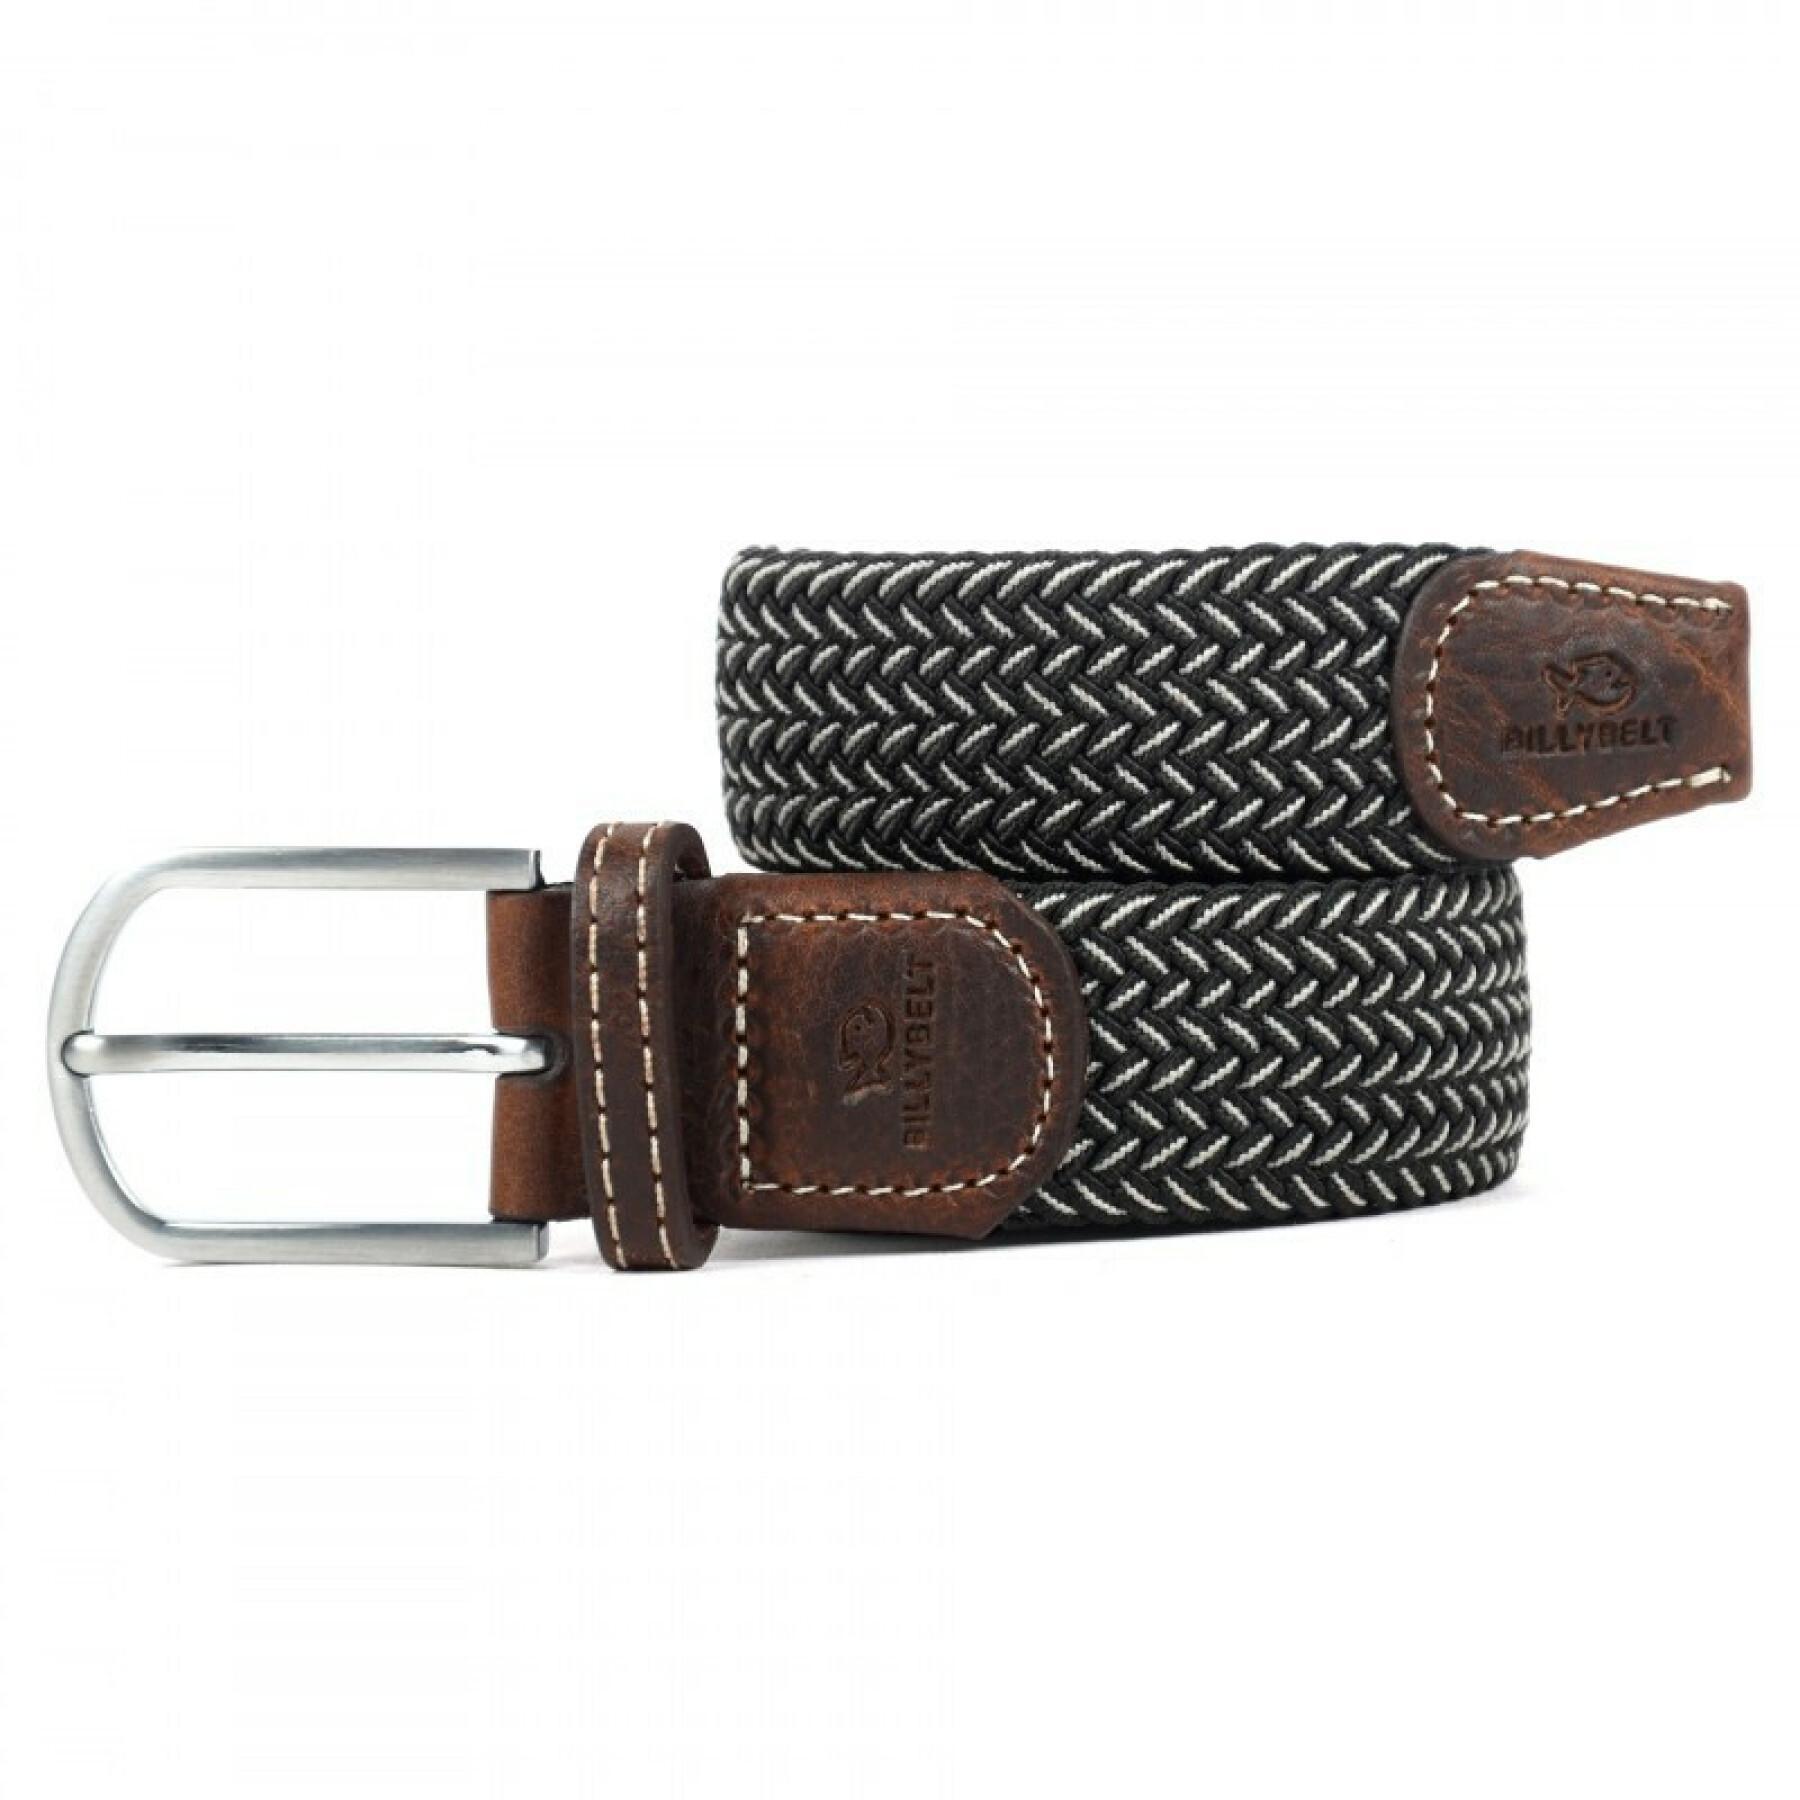 Elastic braided belt Billybelt La vienne